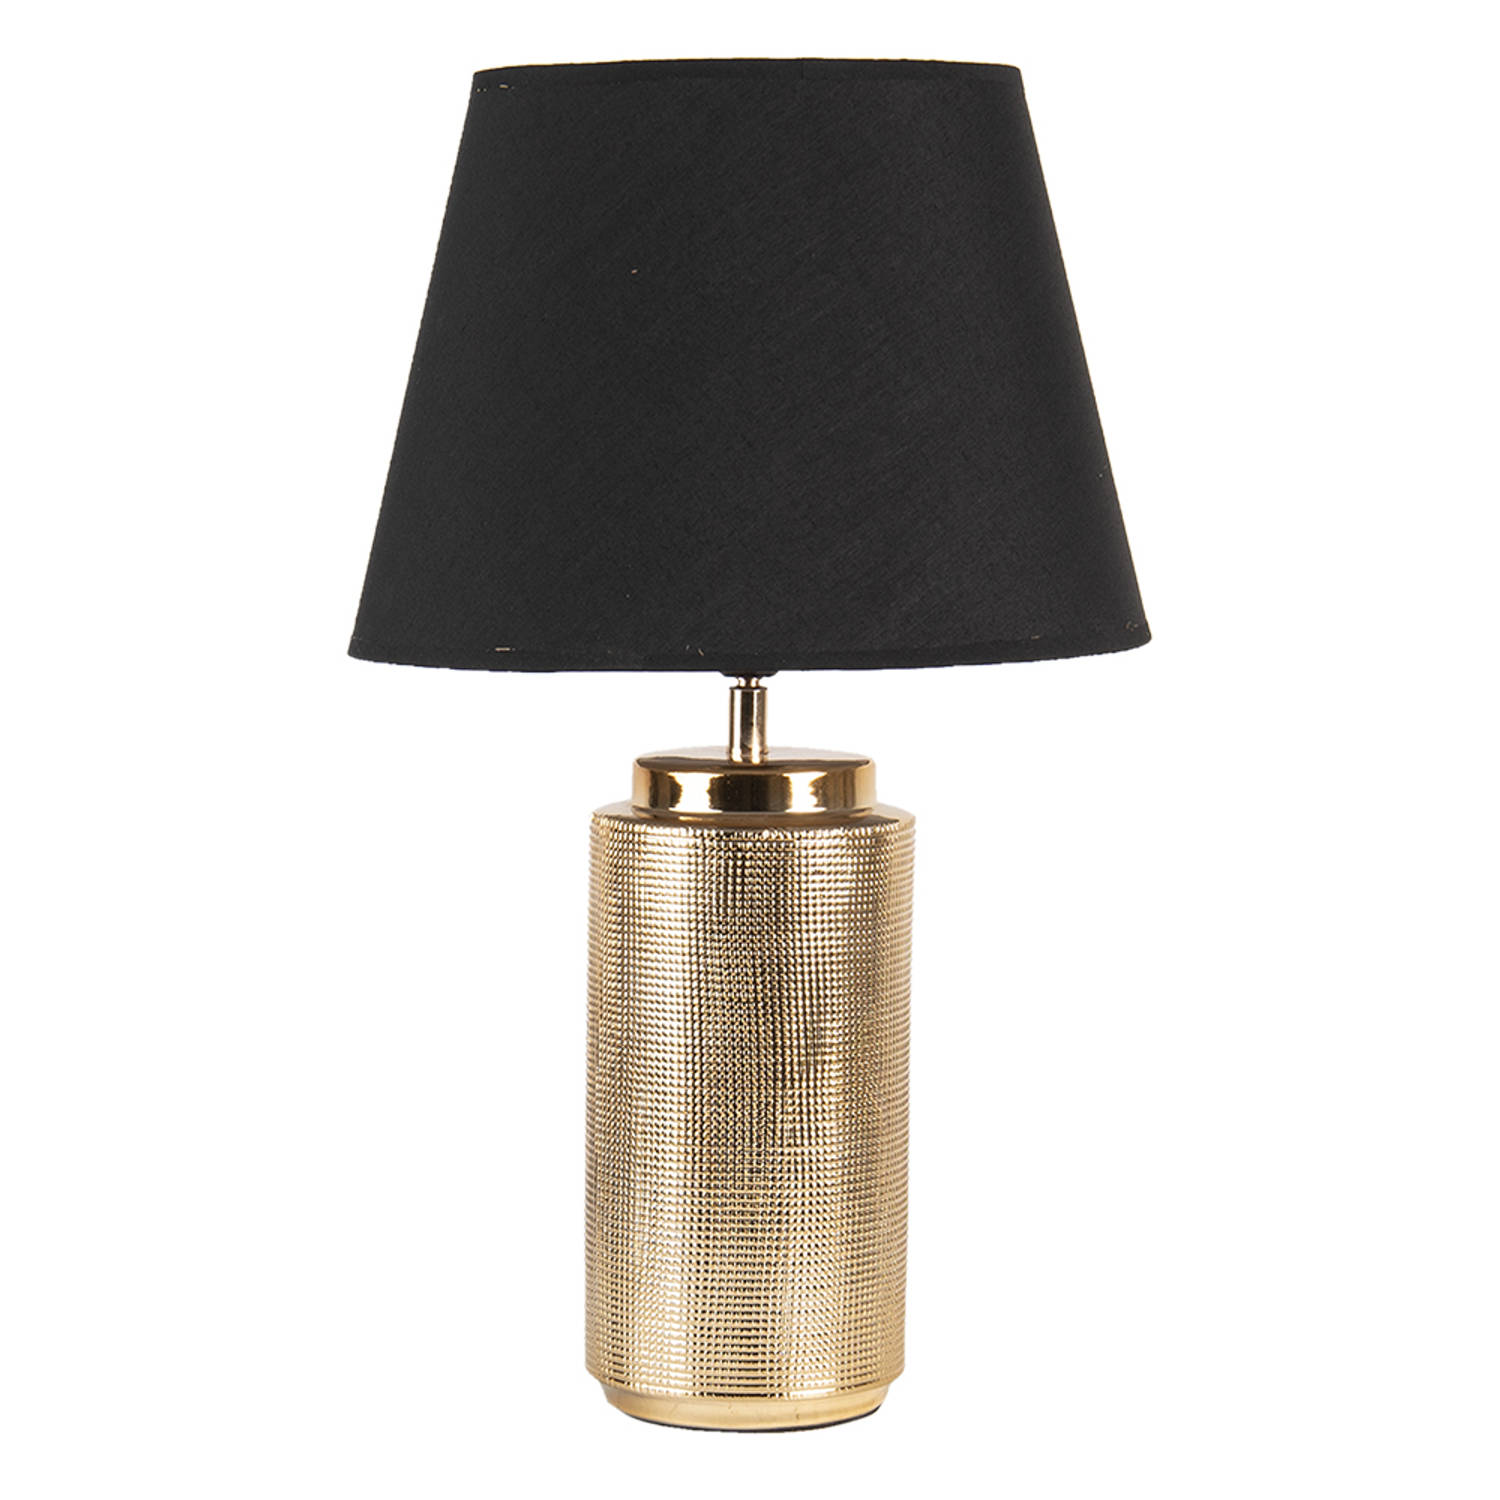 HAES DECO Tafellamp Modern Chic Goudkleurige Lamp, Ø 30x50 cm Bureaulamp, Sfeerlamp, Nachtlampje